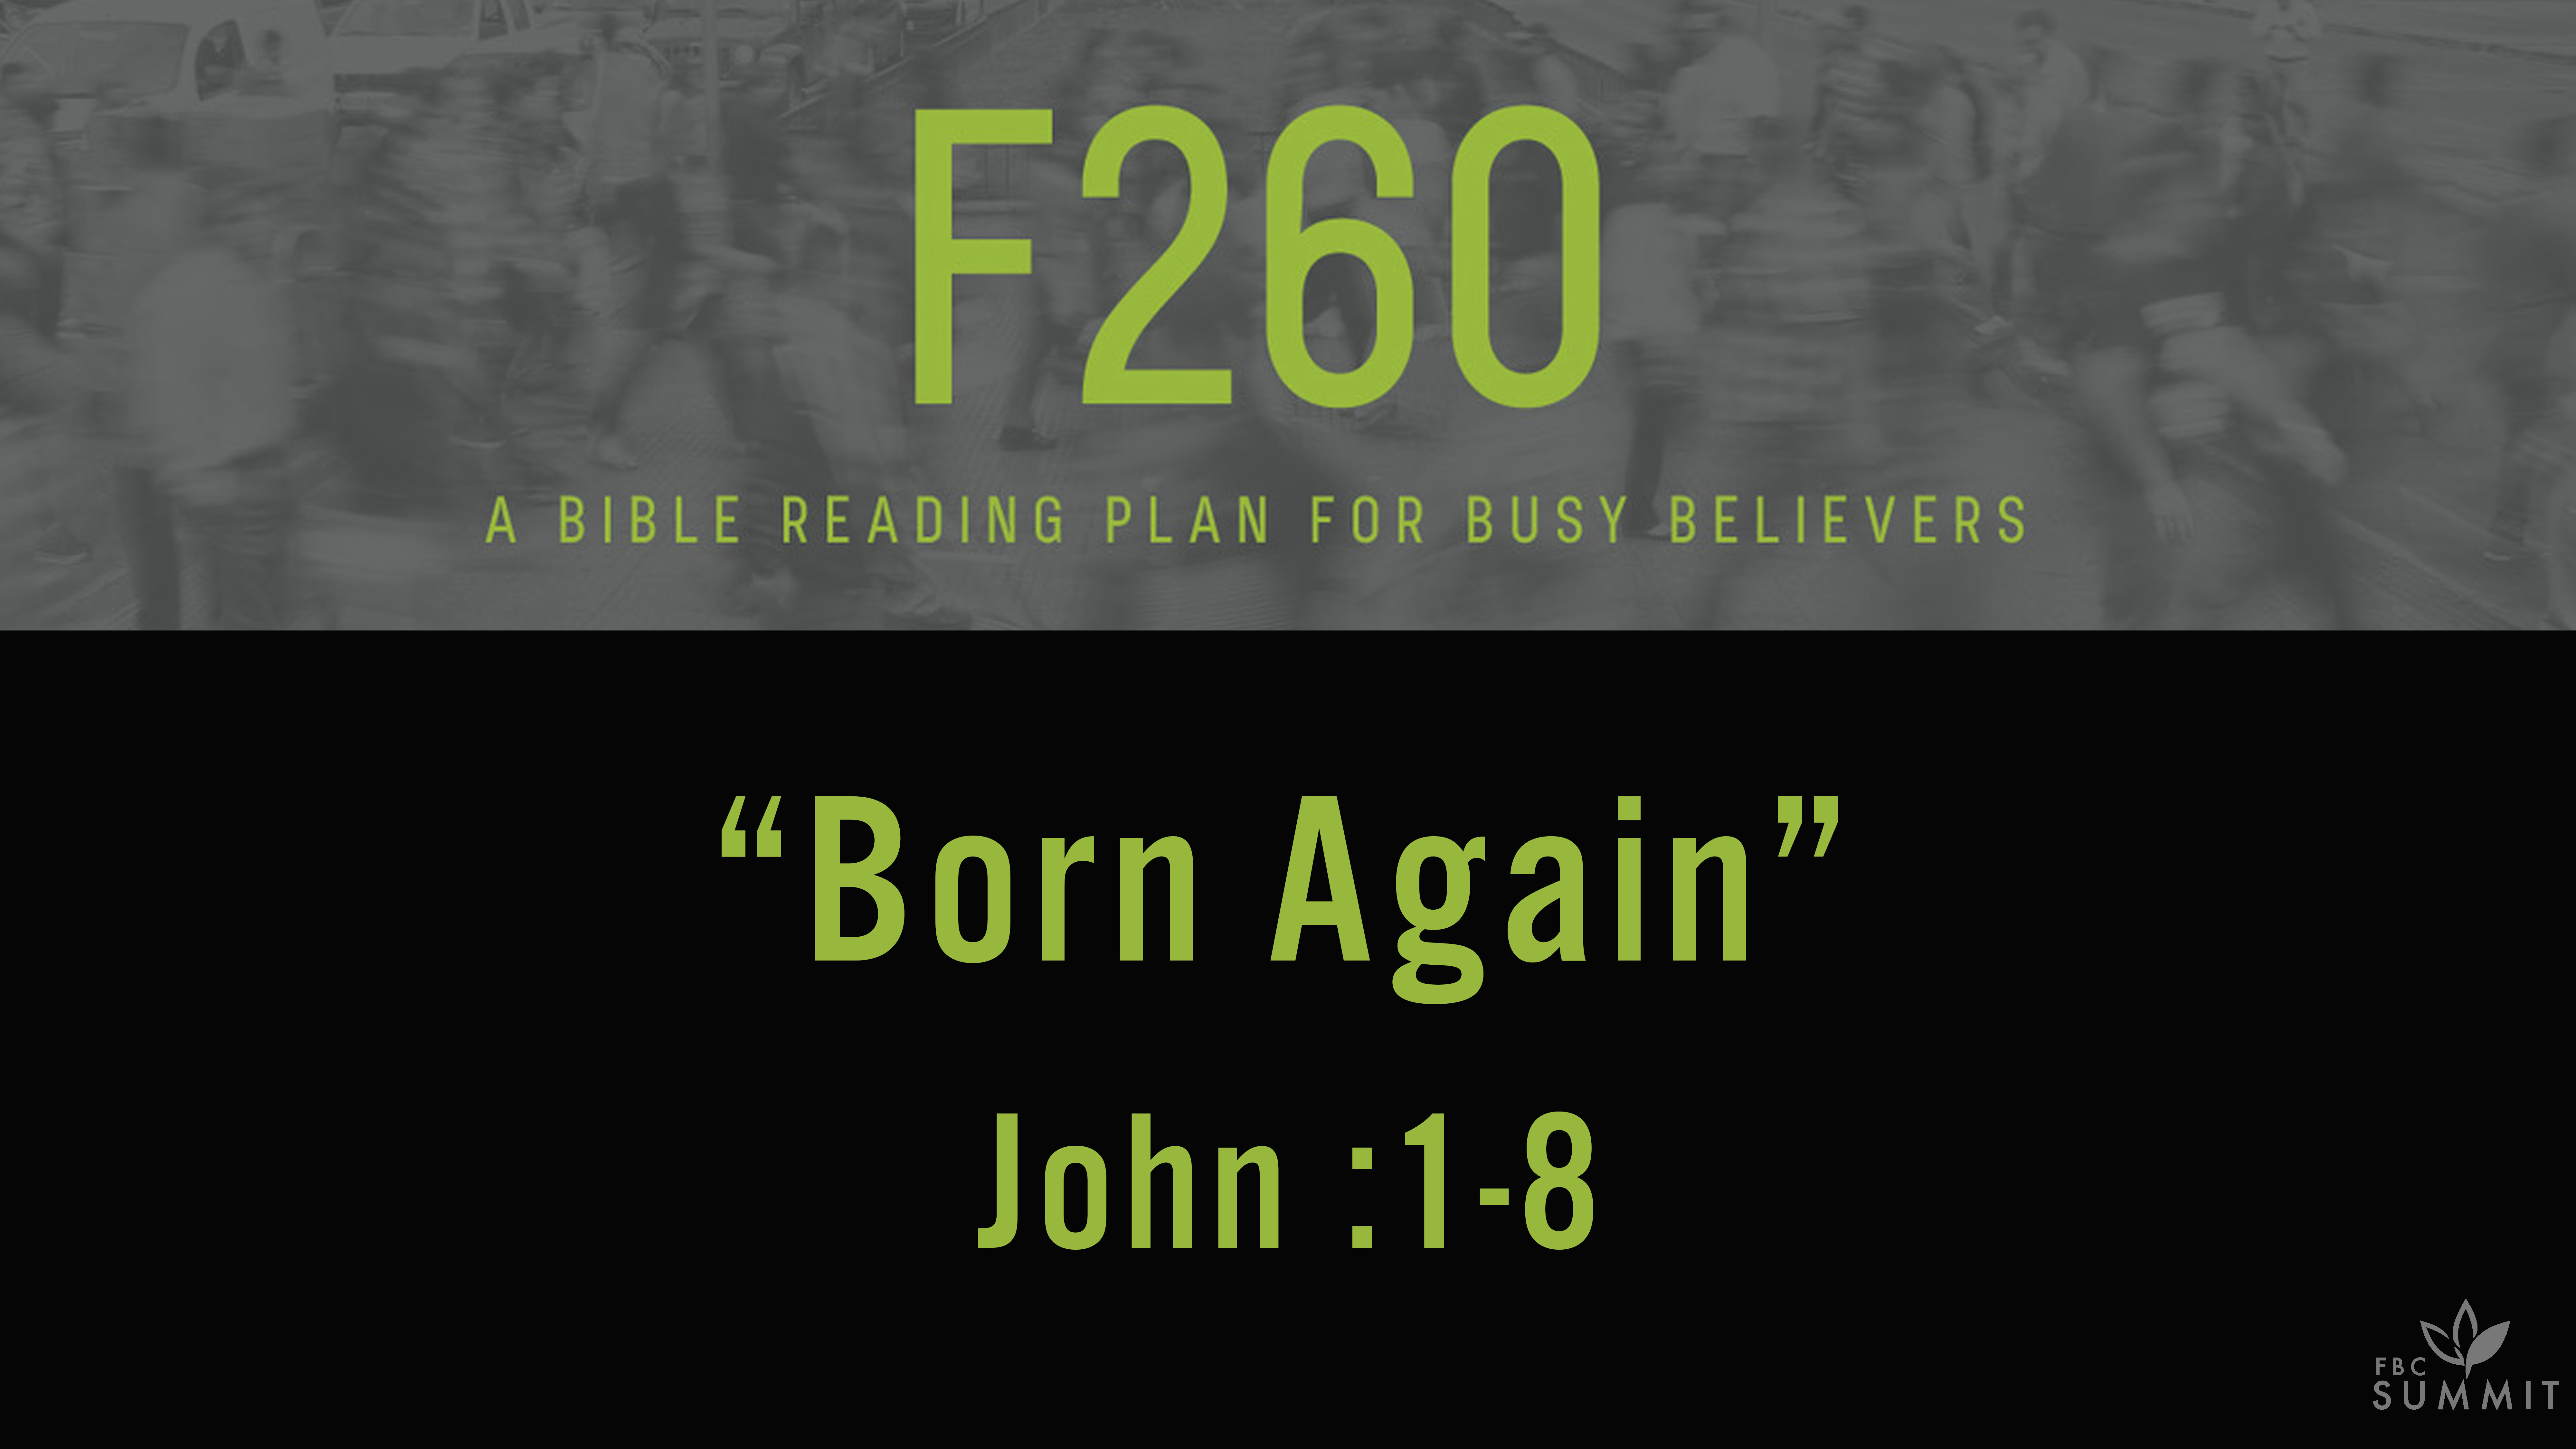 F260: "Born Again" John 3:1-8